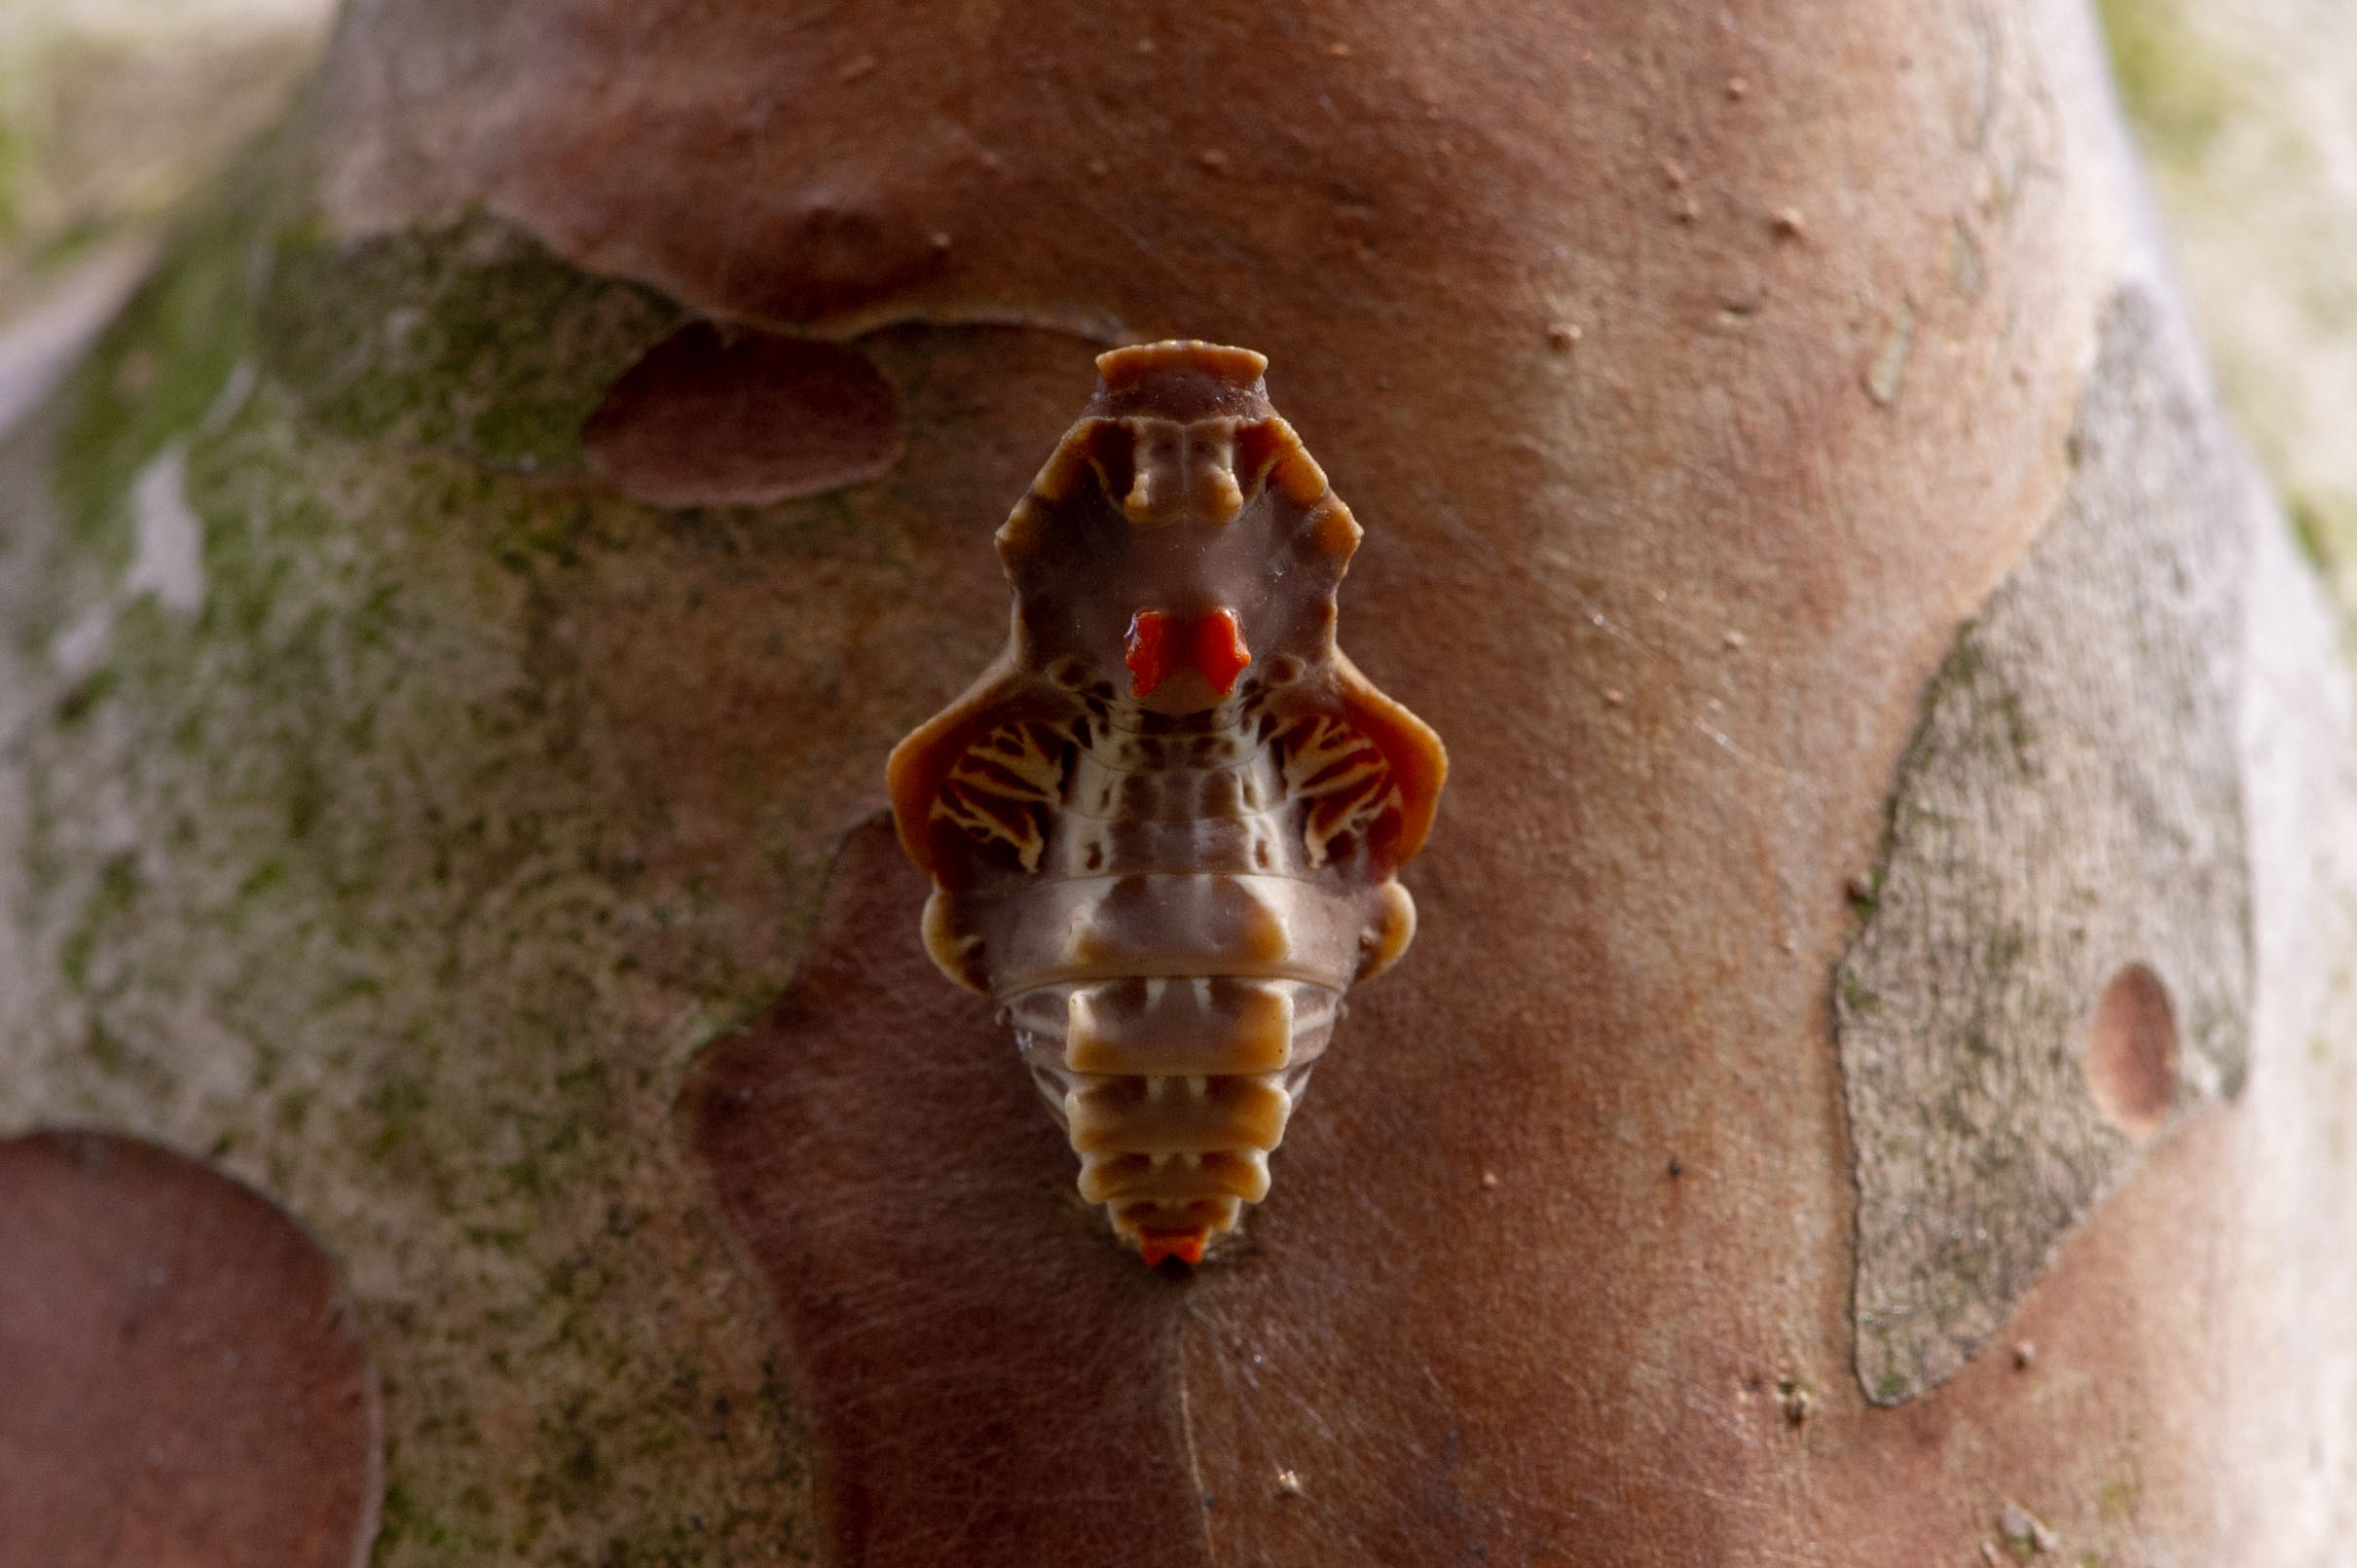 ジャコウアゲハ 虫の写真と生態なら昆虫写真図鑑 ムシミル